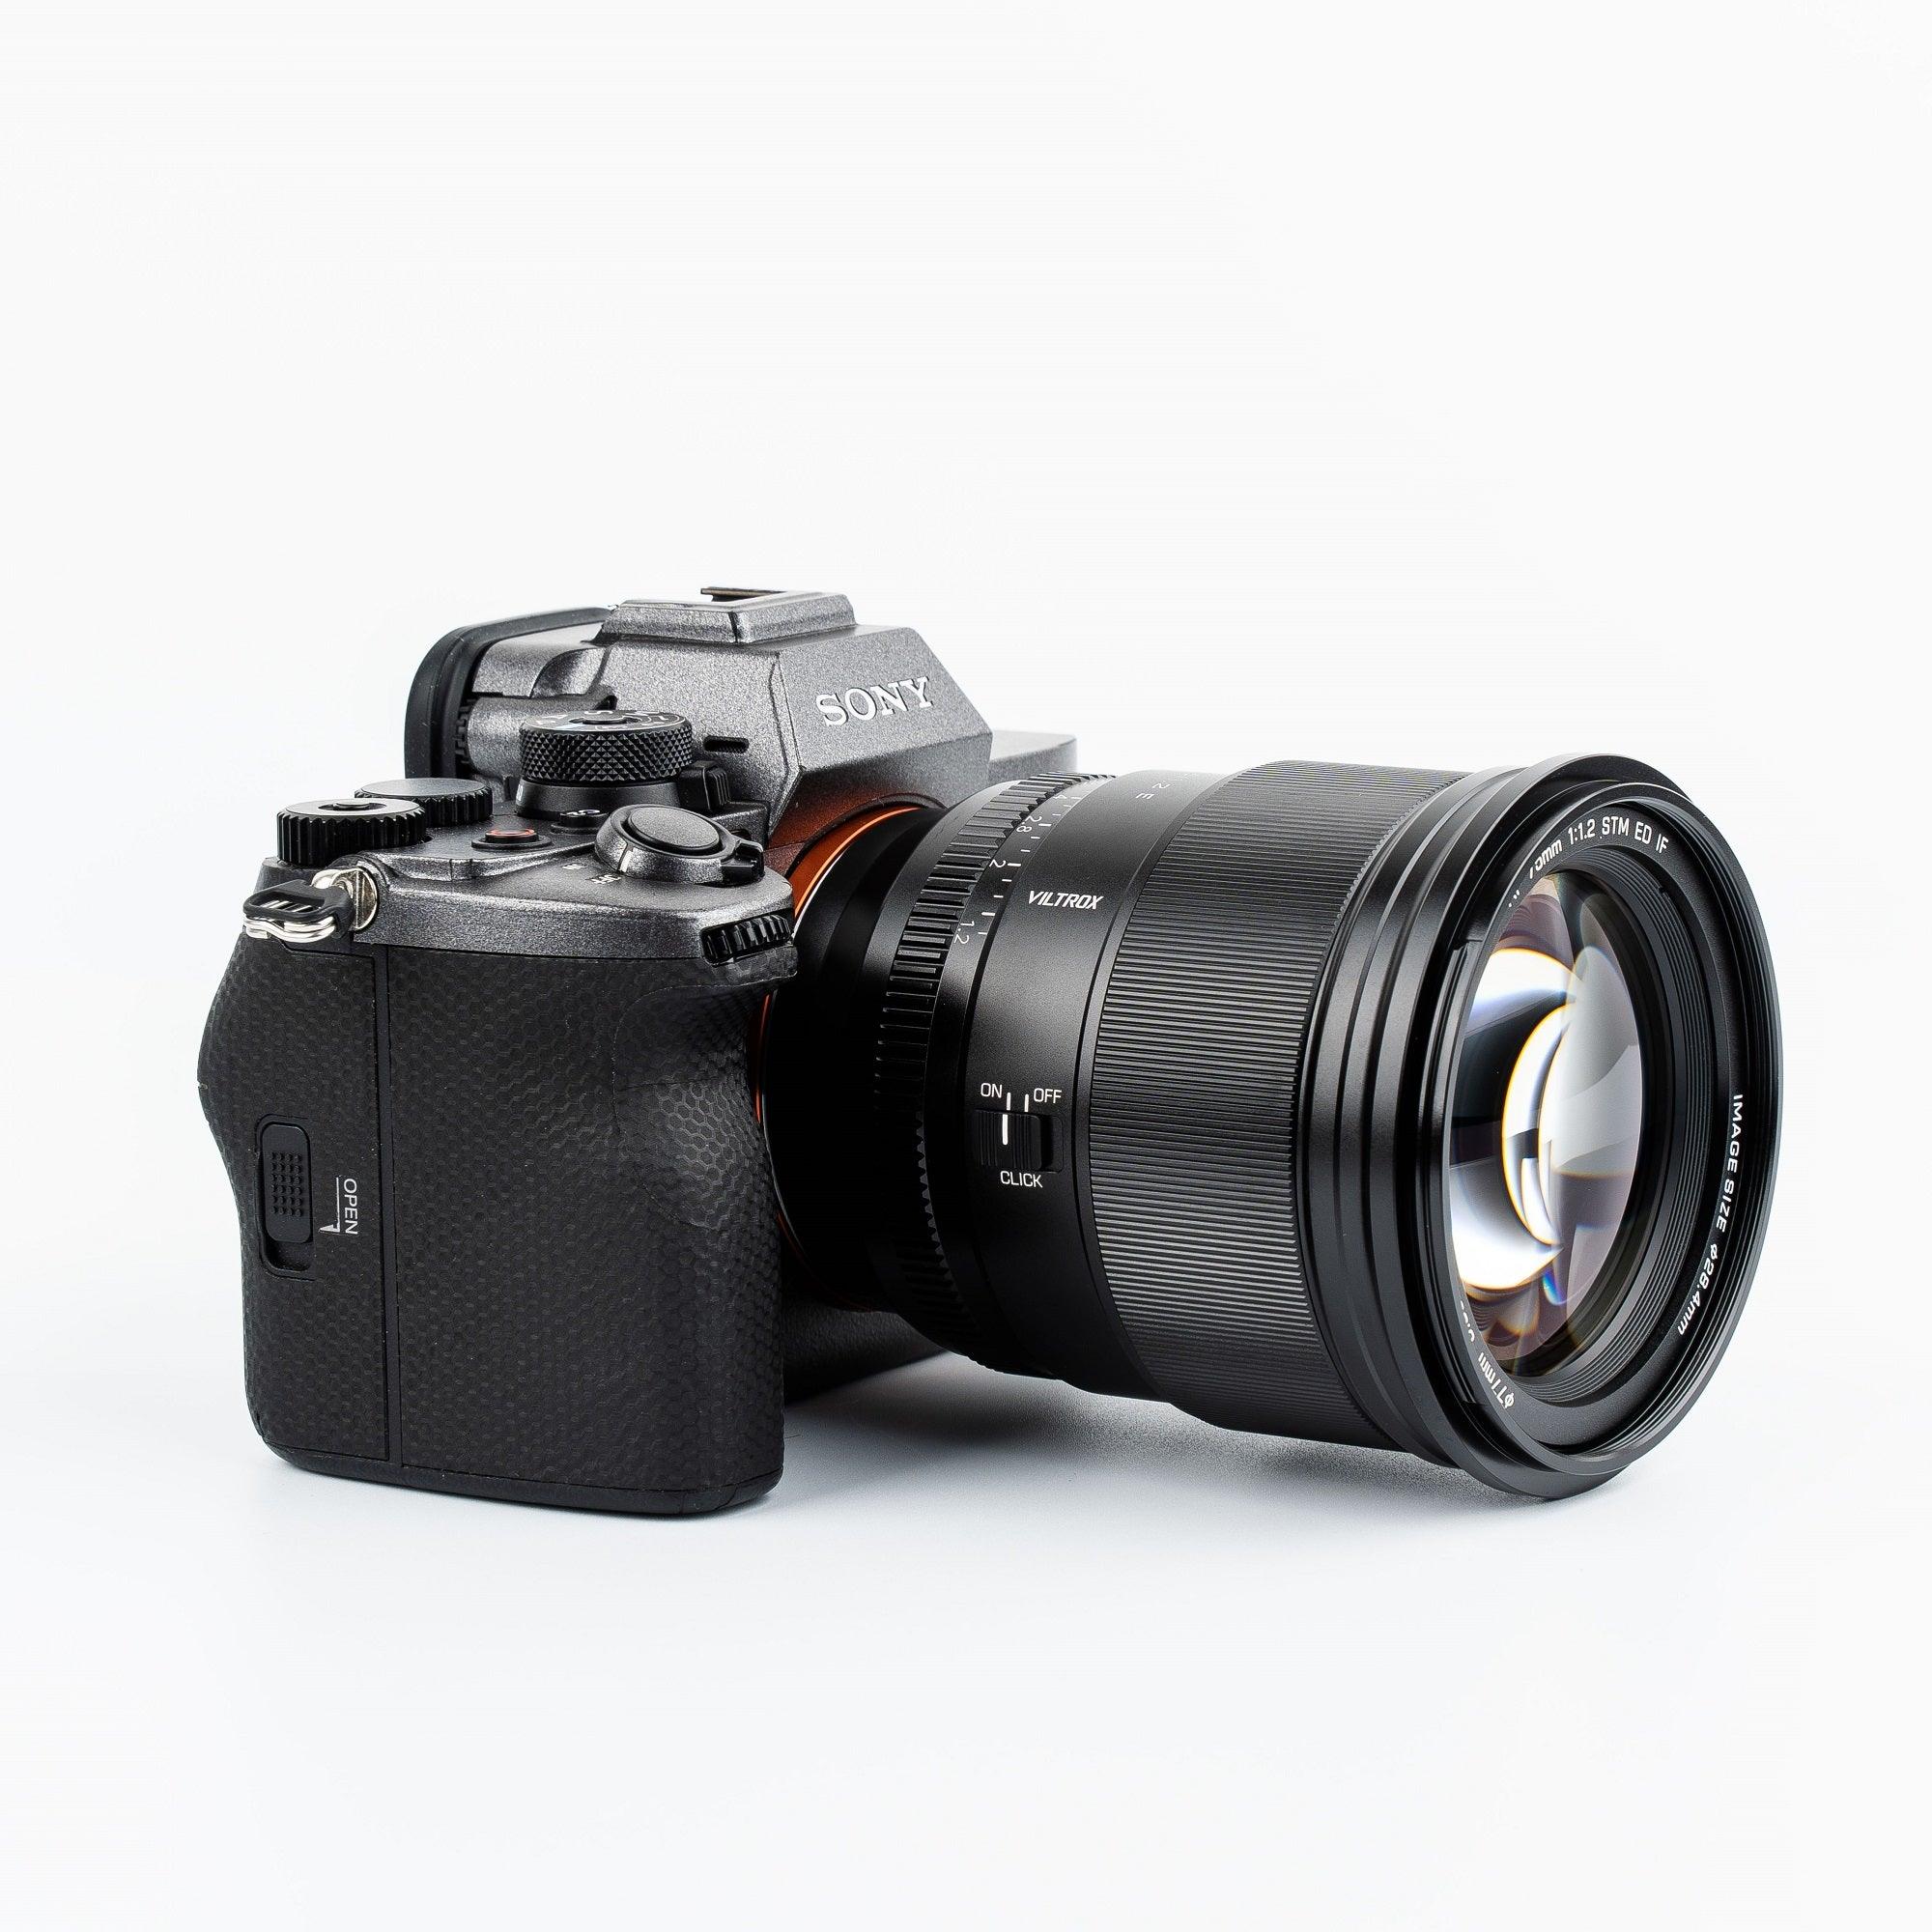 VILTROX PRO 75mm F1.2 Auto Focus Large Aperture Prime Lens Designed for Sony-E/Nikon Z mount - Vitopal